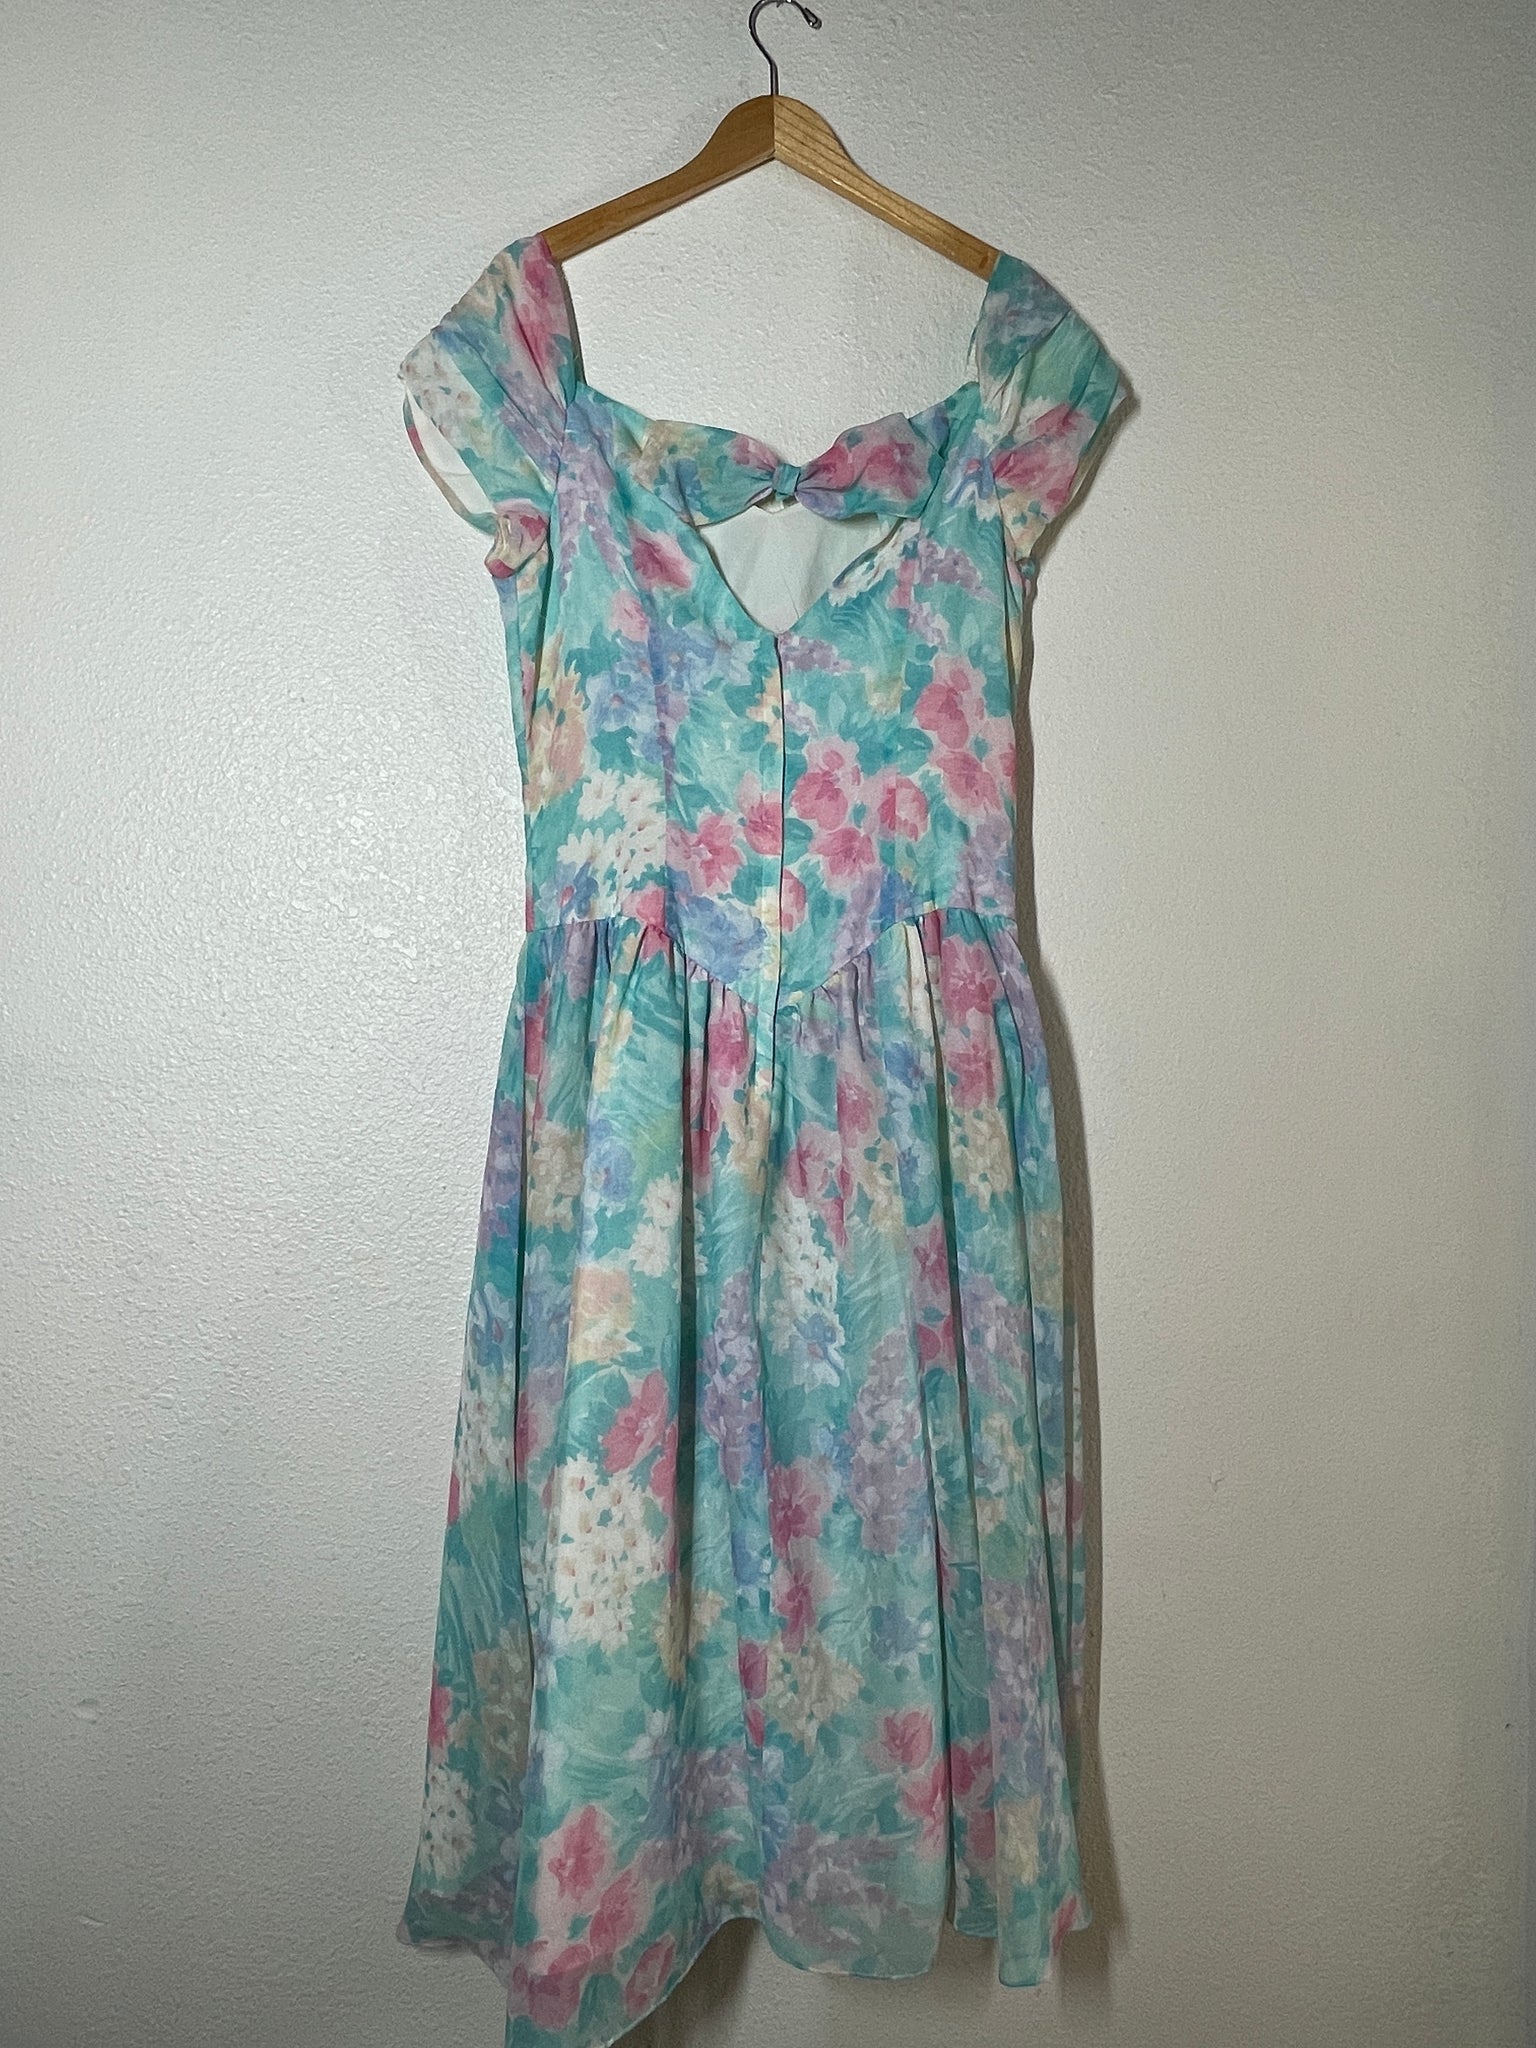 Plus Size Vintage 90’s Floral Dress